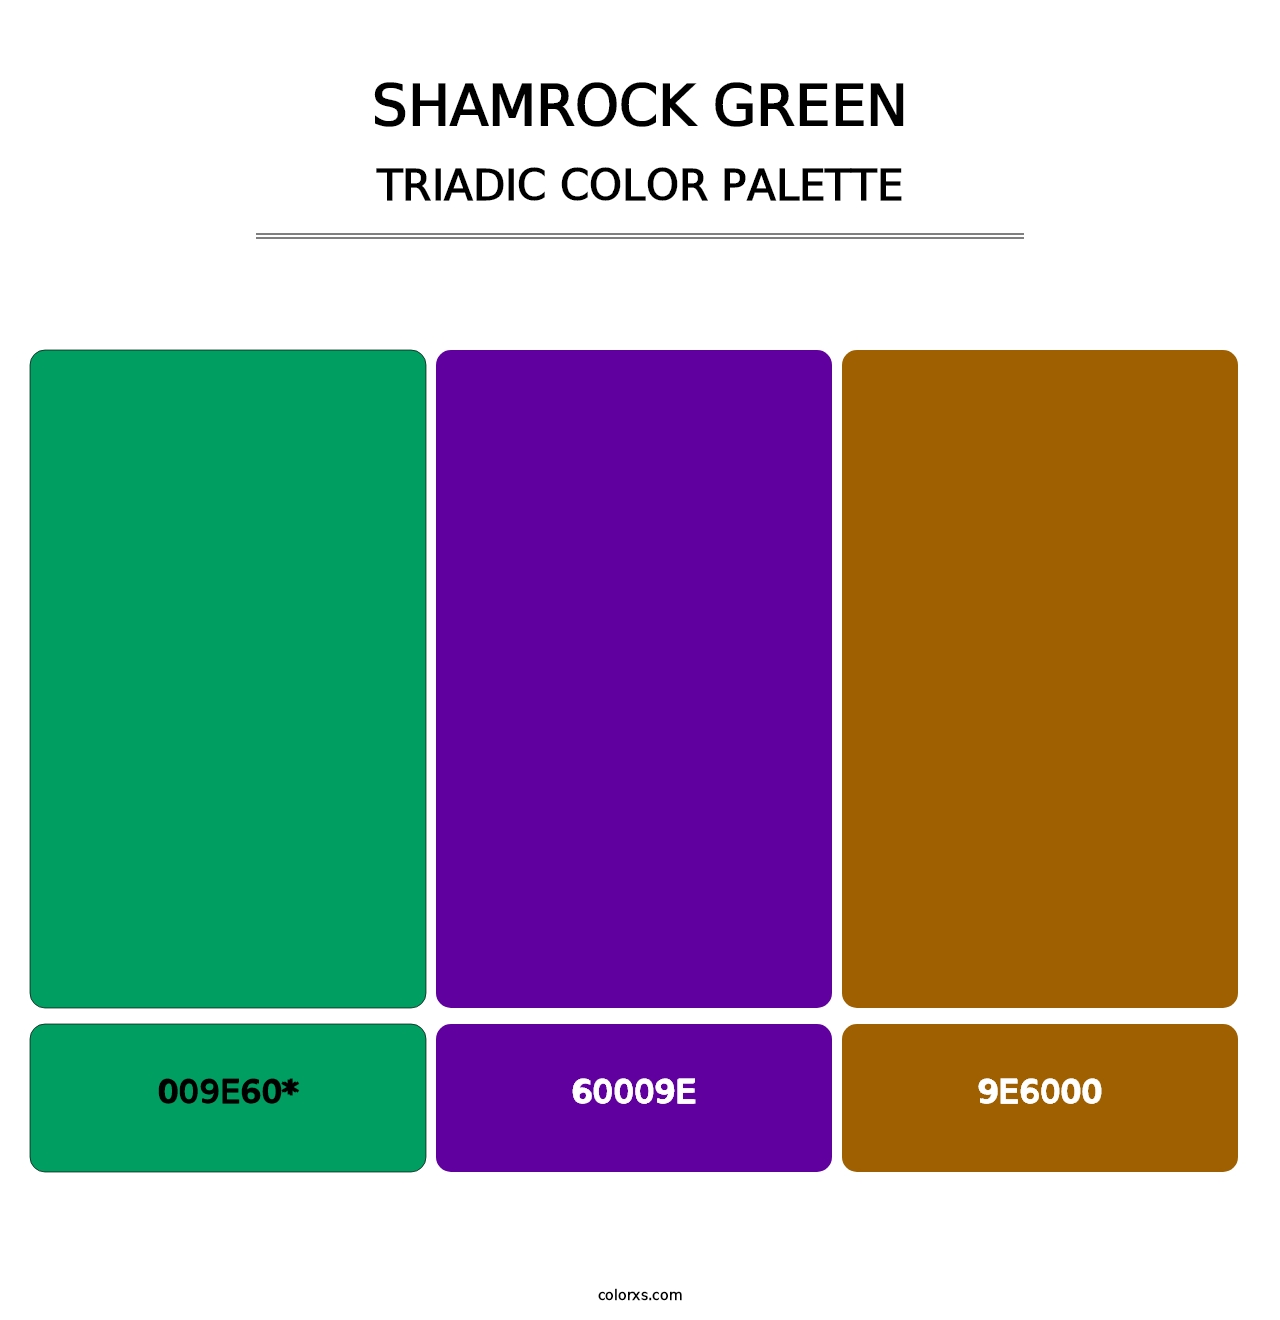 Shamrock Green - Triadic Color Palette